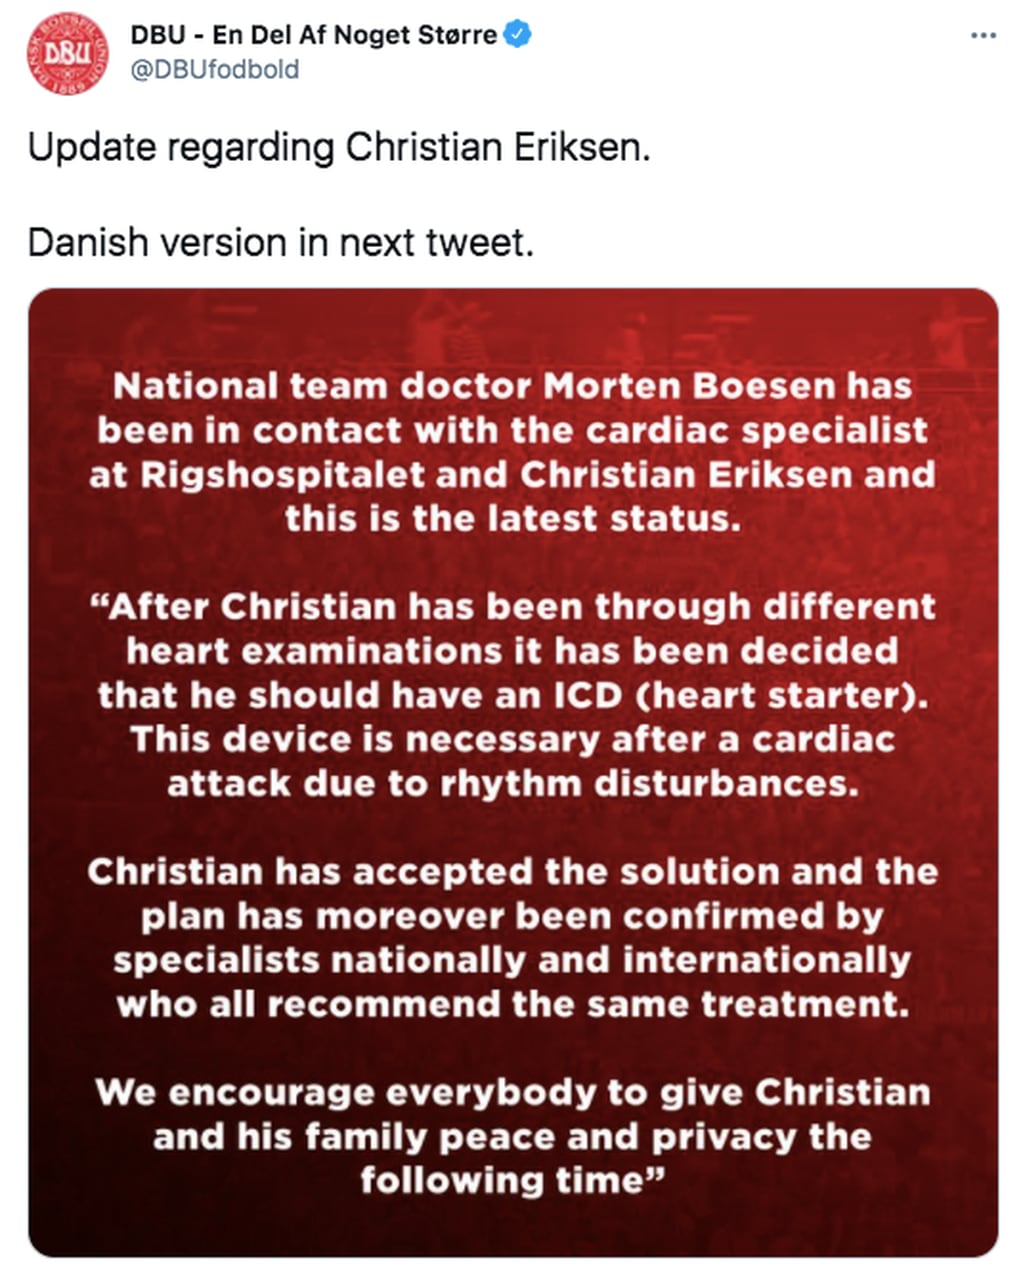 El comunicado de la Federación Danesa de Fútbol sobre el caso de Christian Eriksen.